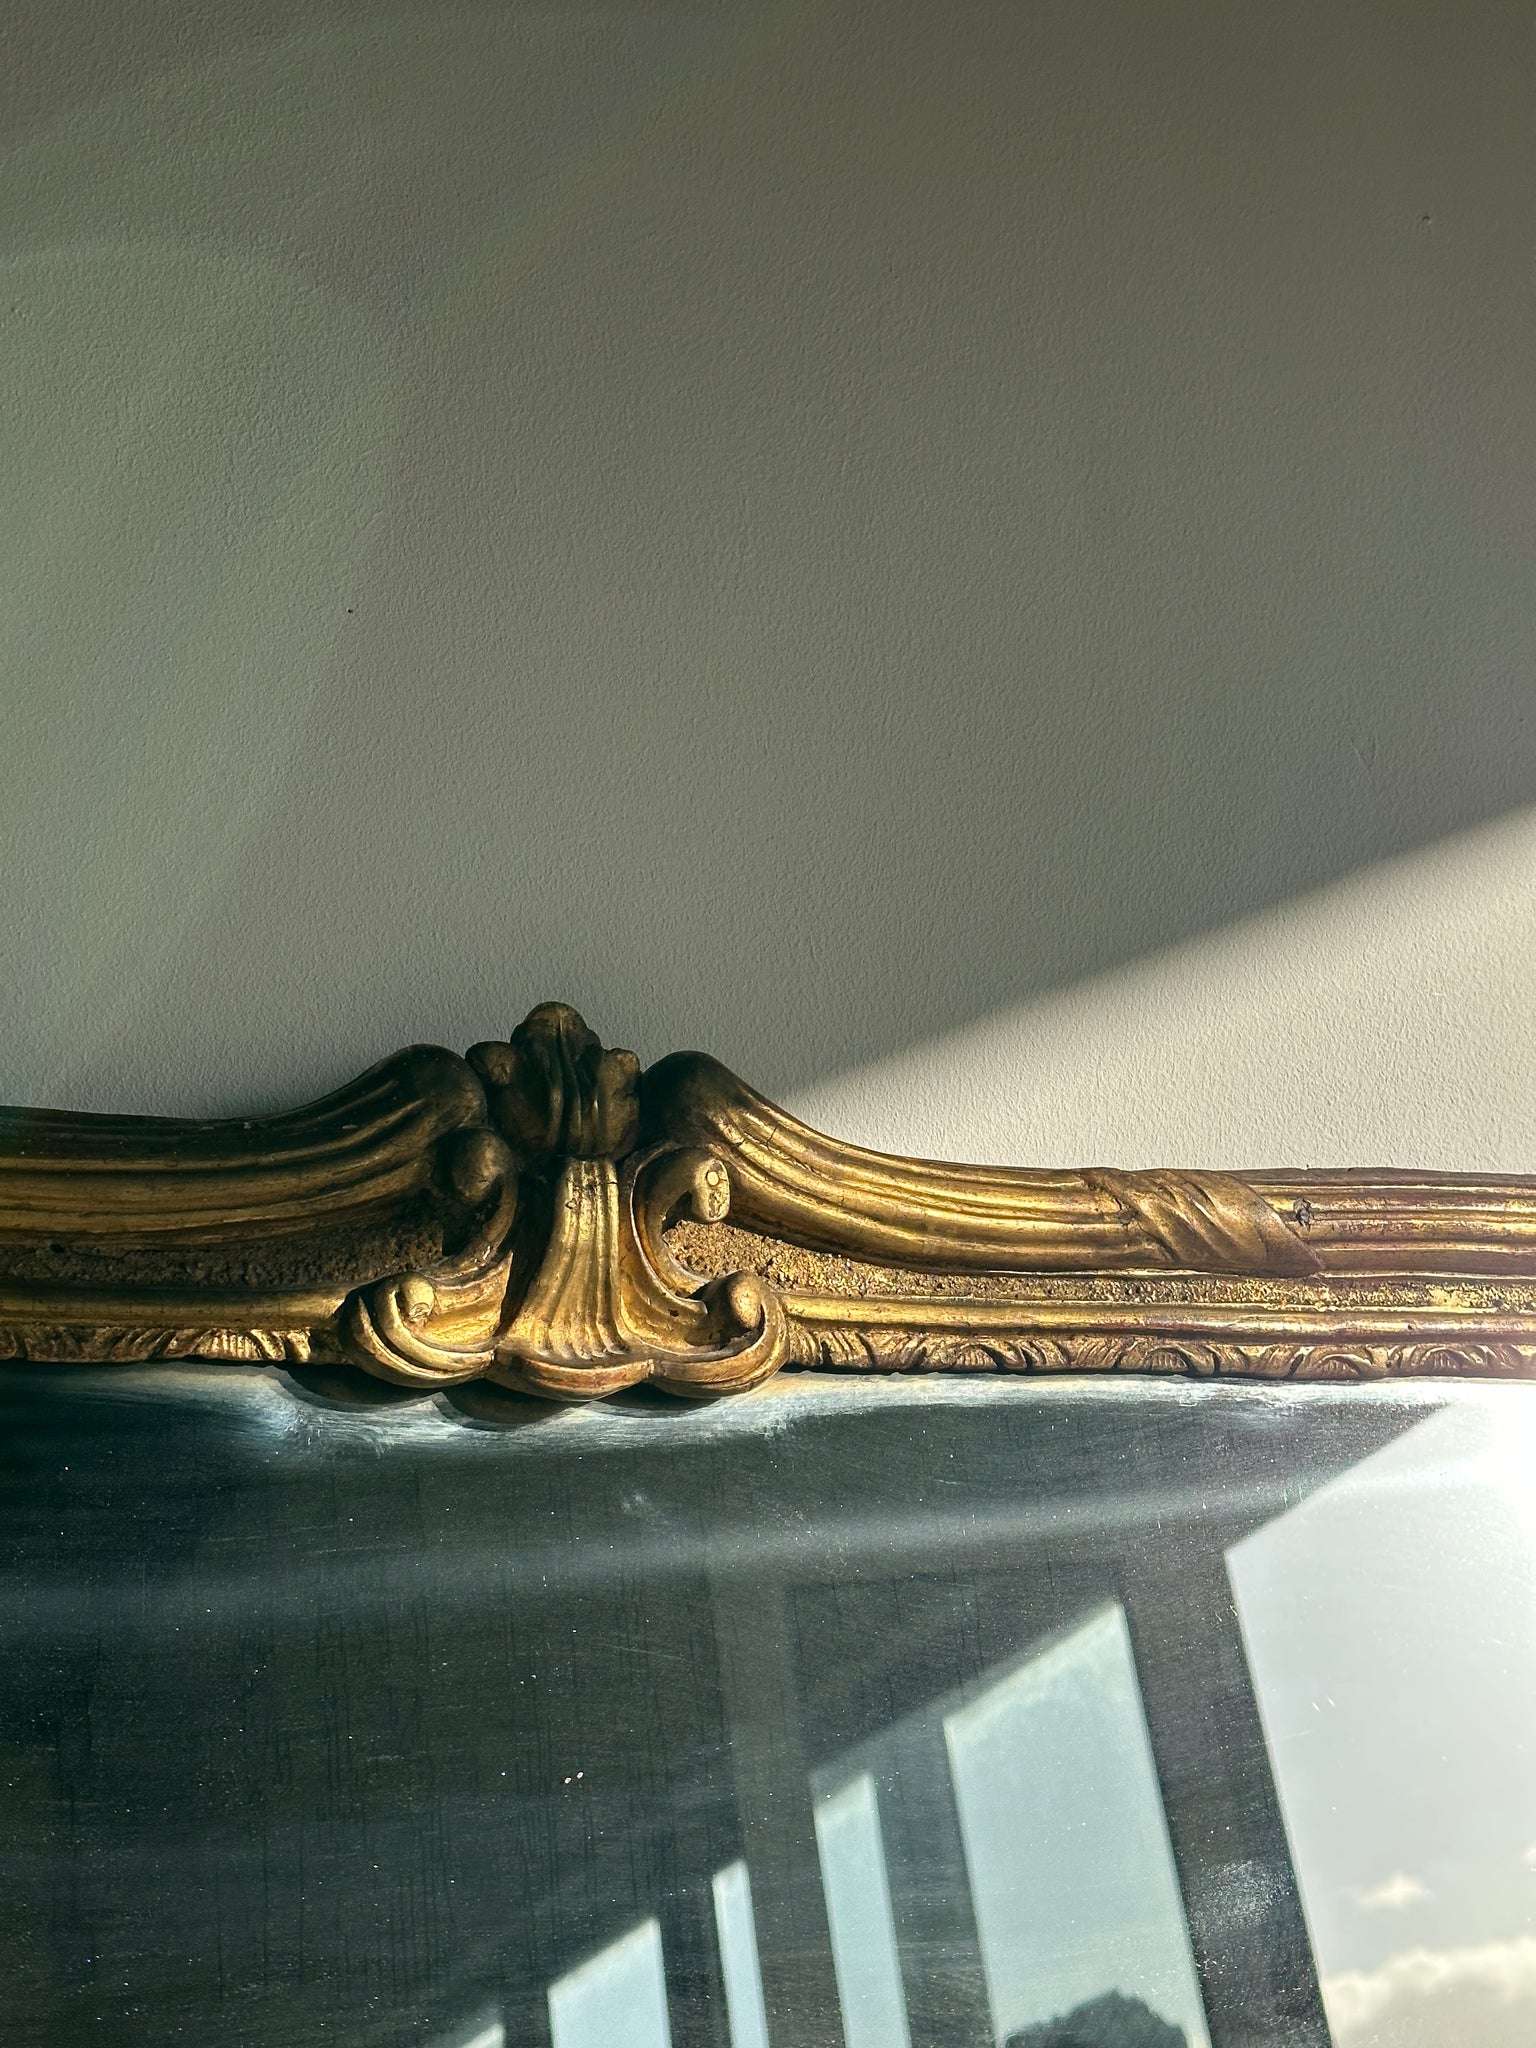 Grand miroir doré XIXe angles arrondis glace au mercure Style Louis XVI